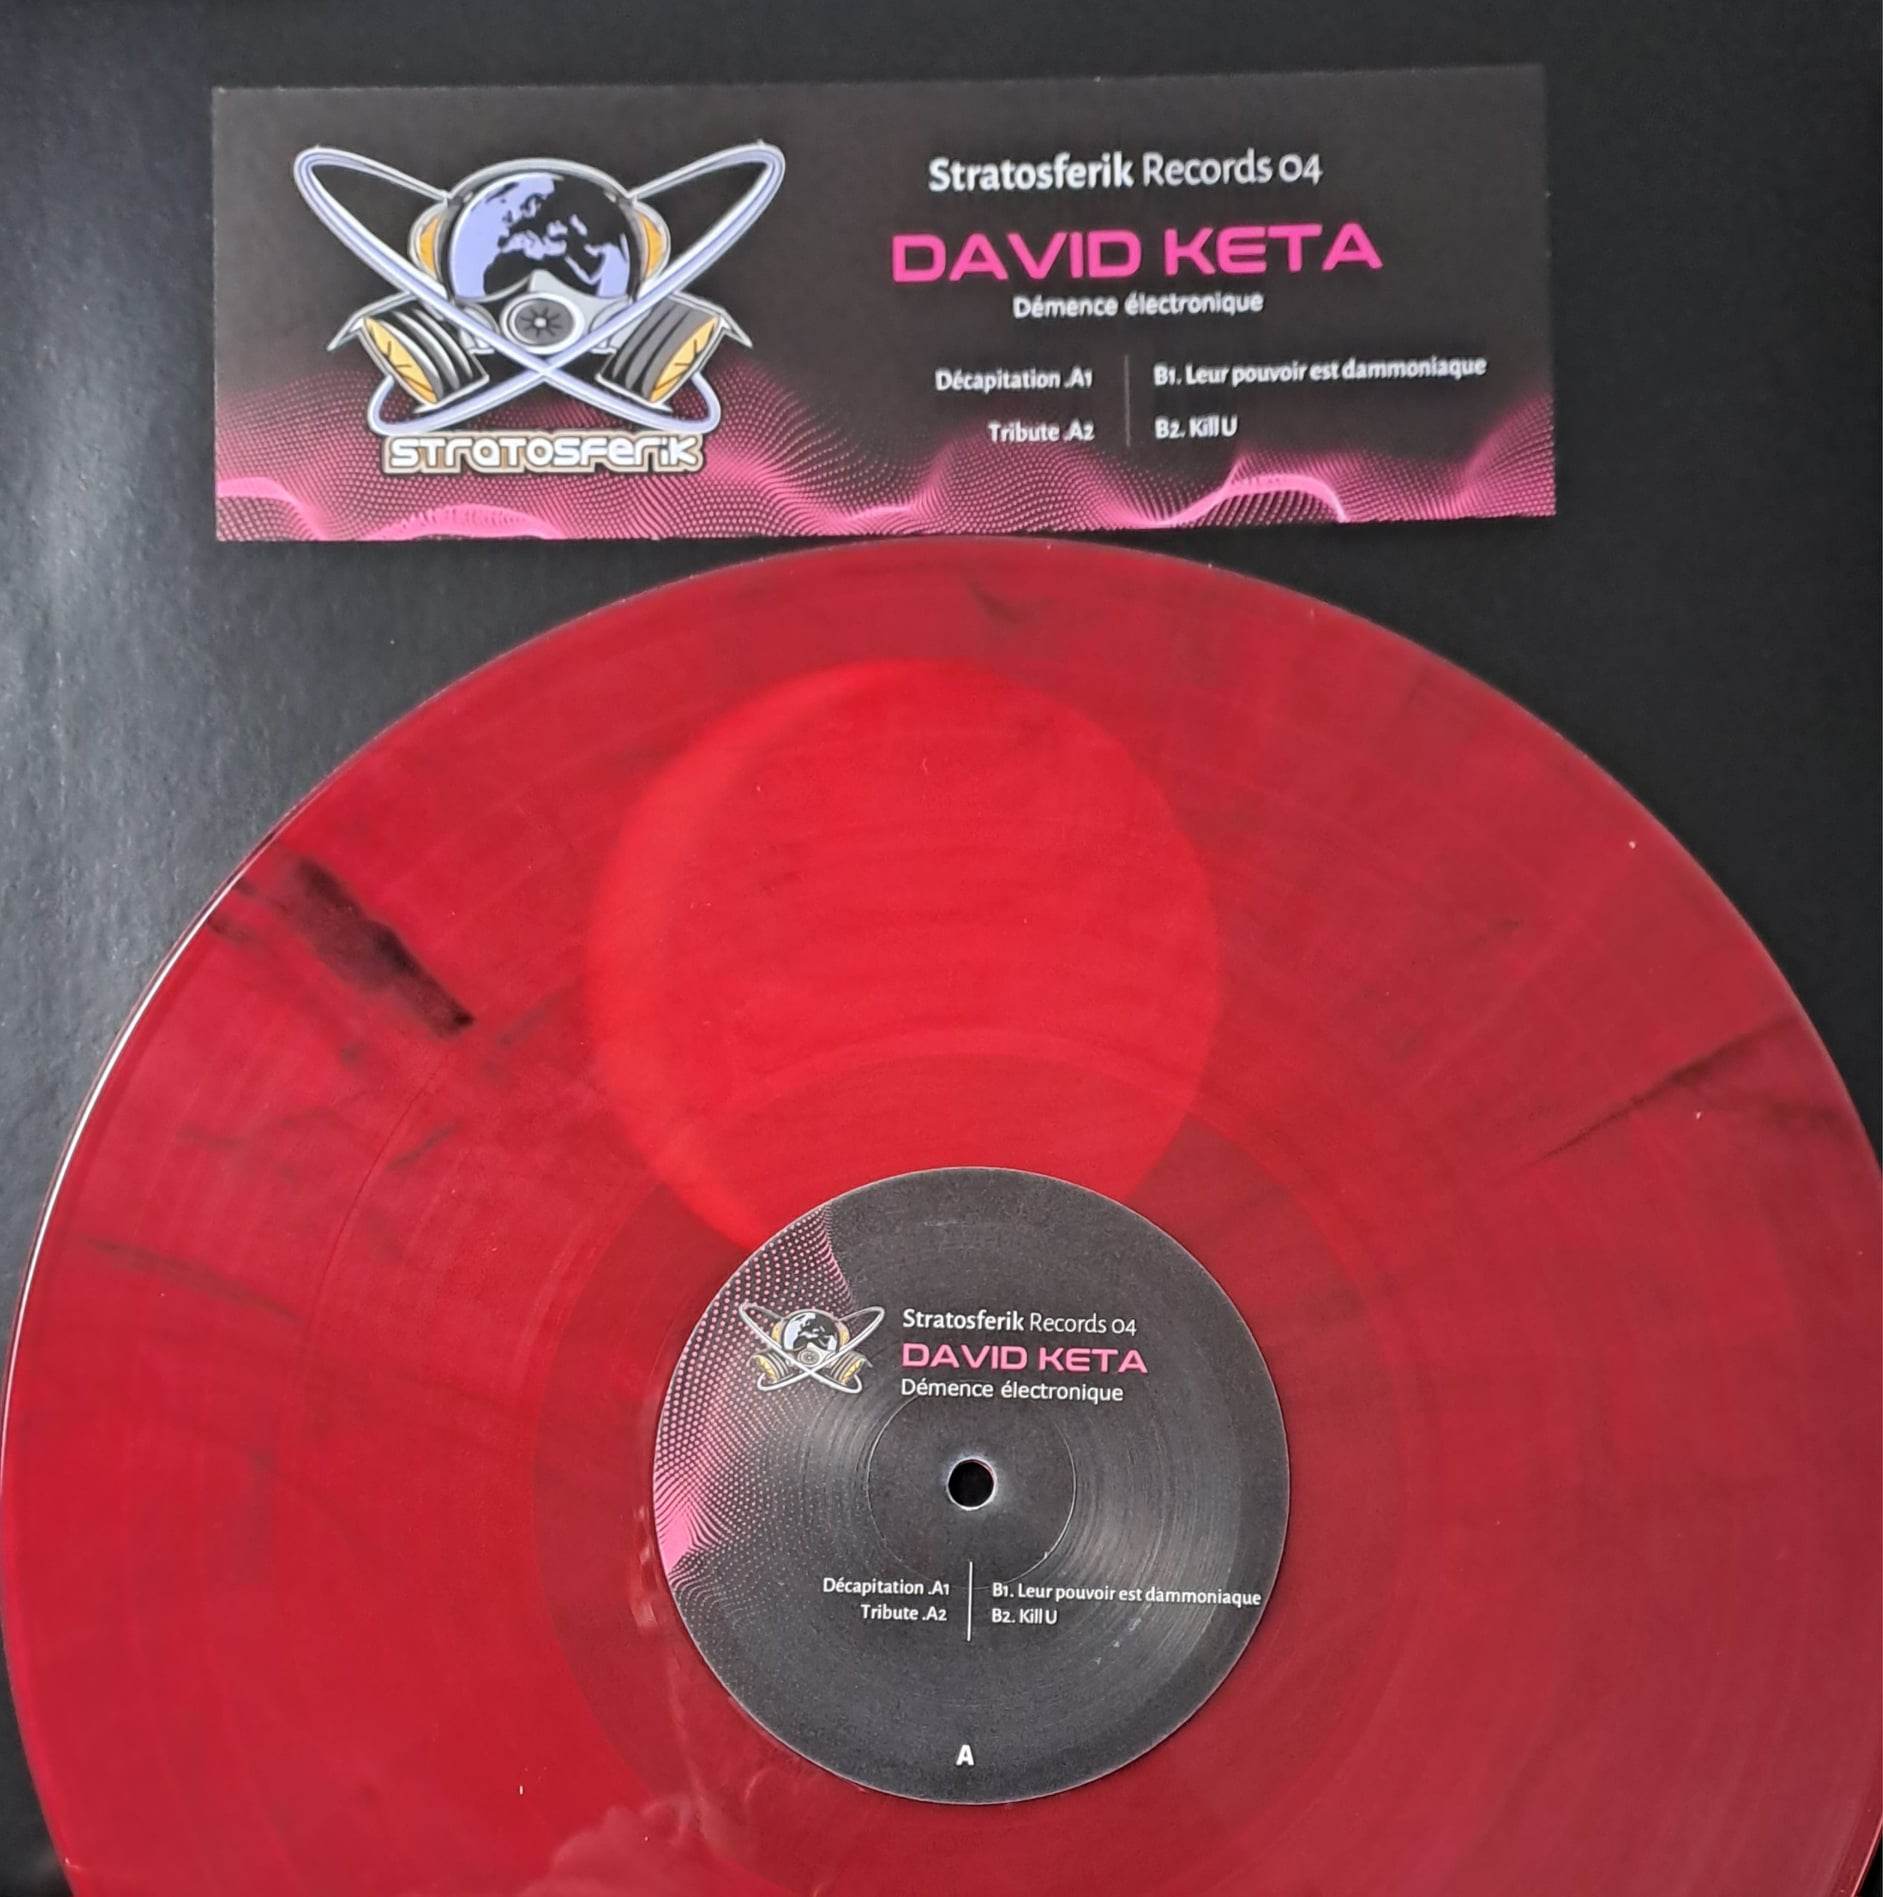 Stratosferik 04 (rouge) (toute dernière copie en stock) - vinyle hardcore